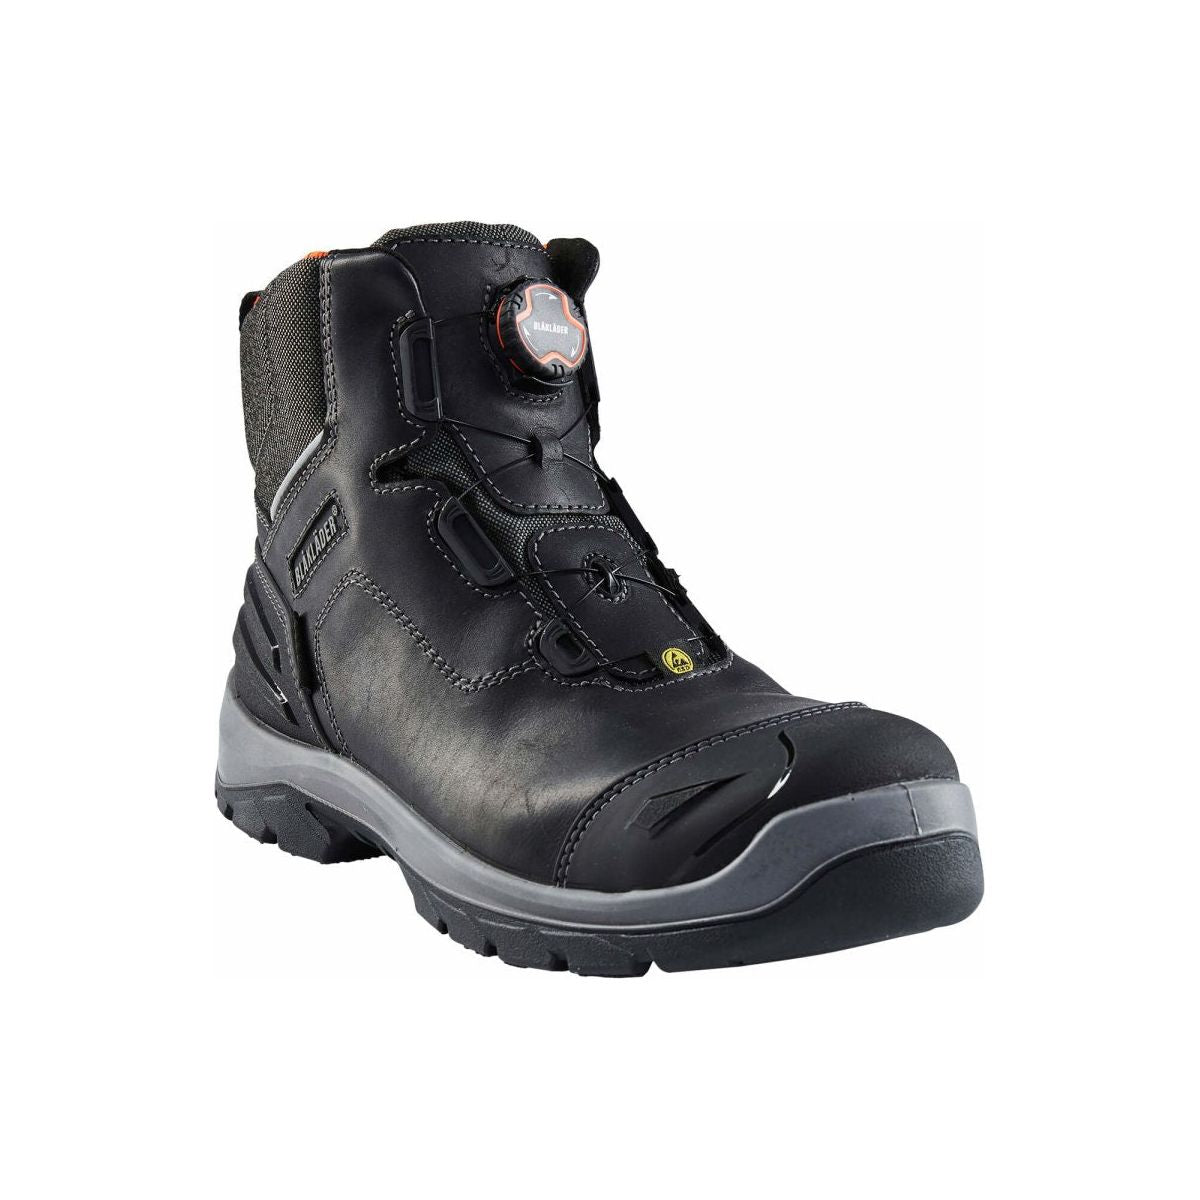 Blaklader 2455 Elite Safety Boots S3 (24550000) - Mens - workweargurus.com